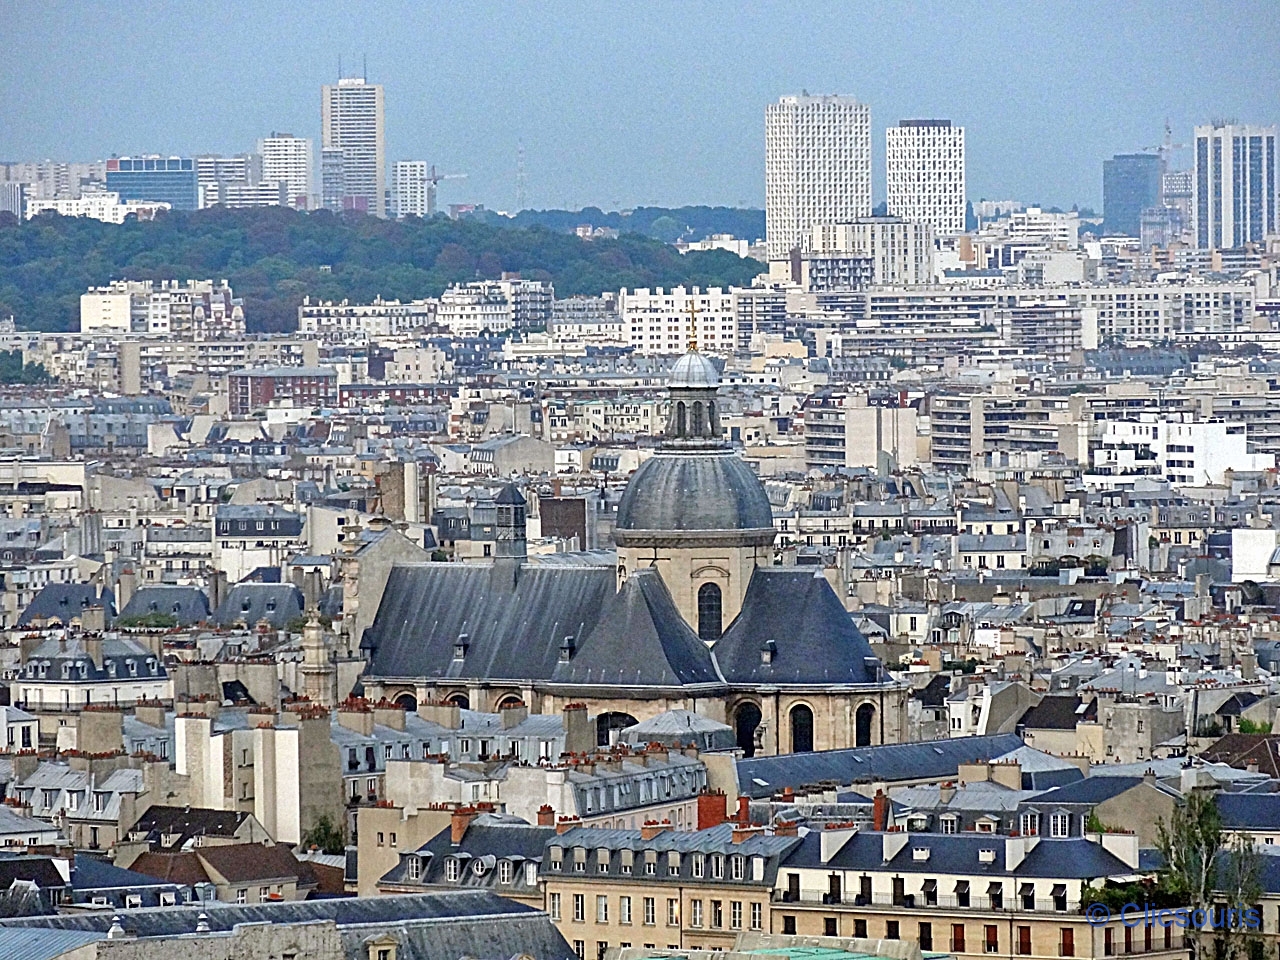 Vue de la cathédrale Notre-Dame de Paris